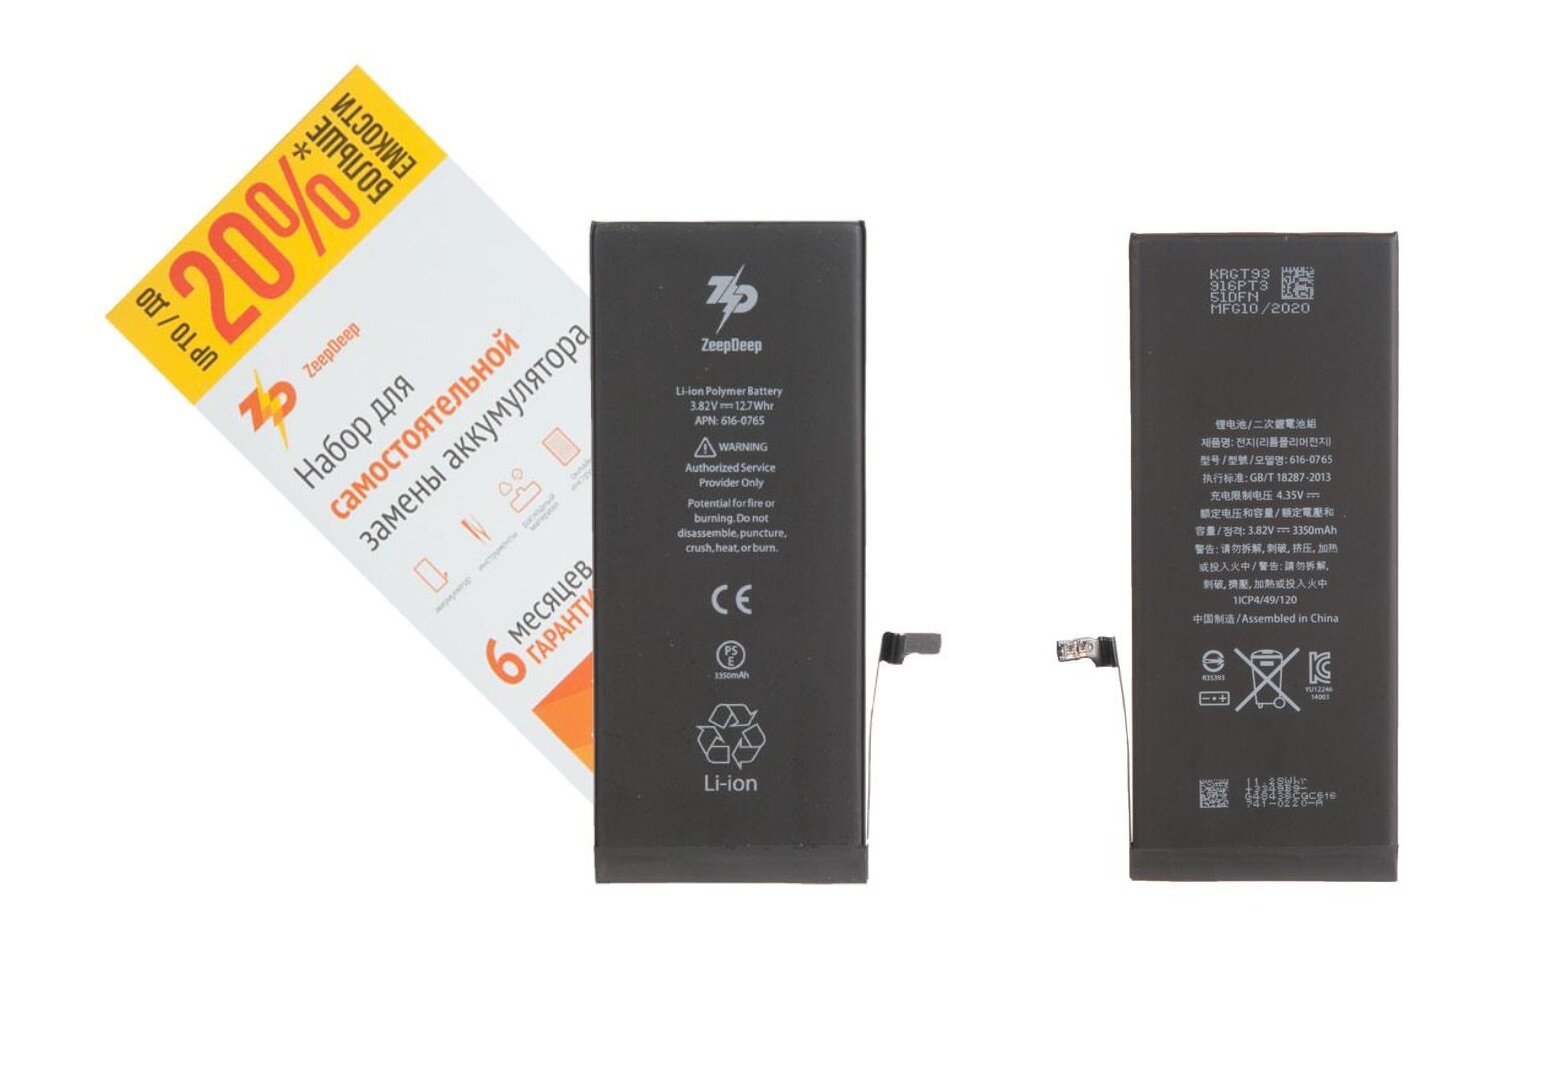 Battery / Аккумулятор iPhone 6 plus +13% увеличенной емкости в наборе ZeepDeep: батарея 3350 mAh набор инструментов монтажные стикеры пошаговая инструкция